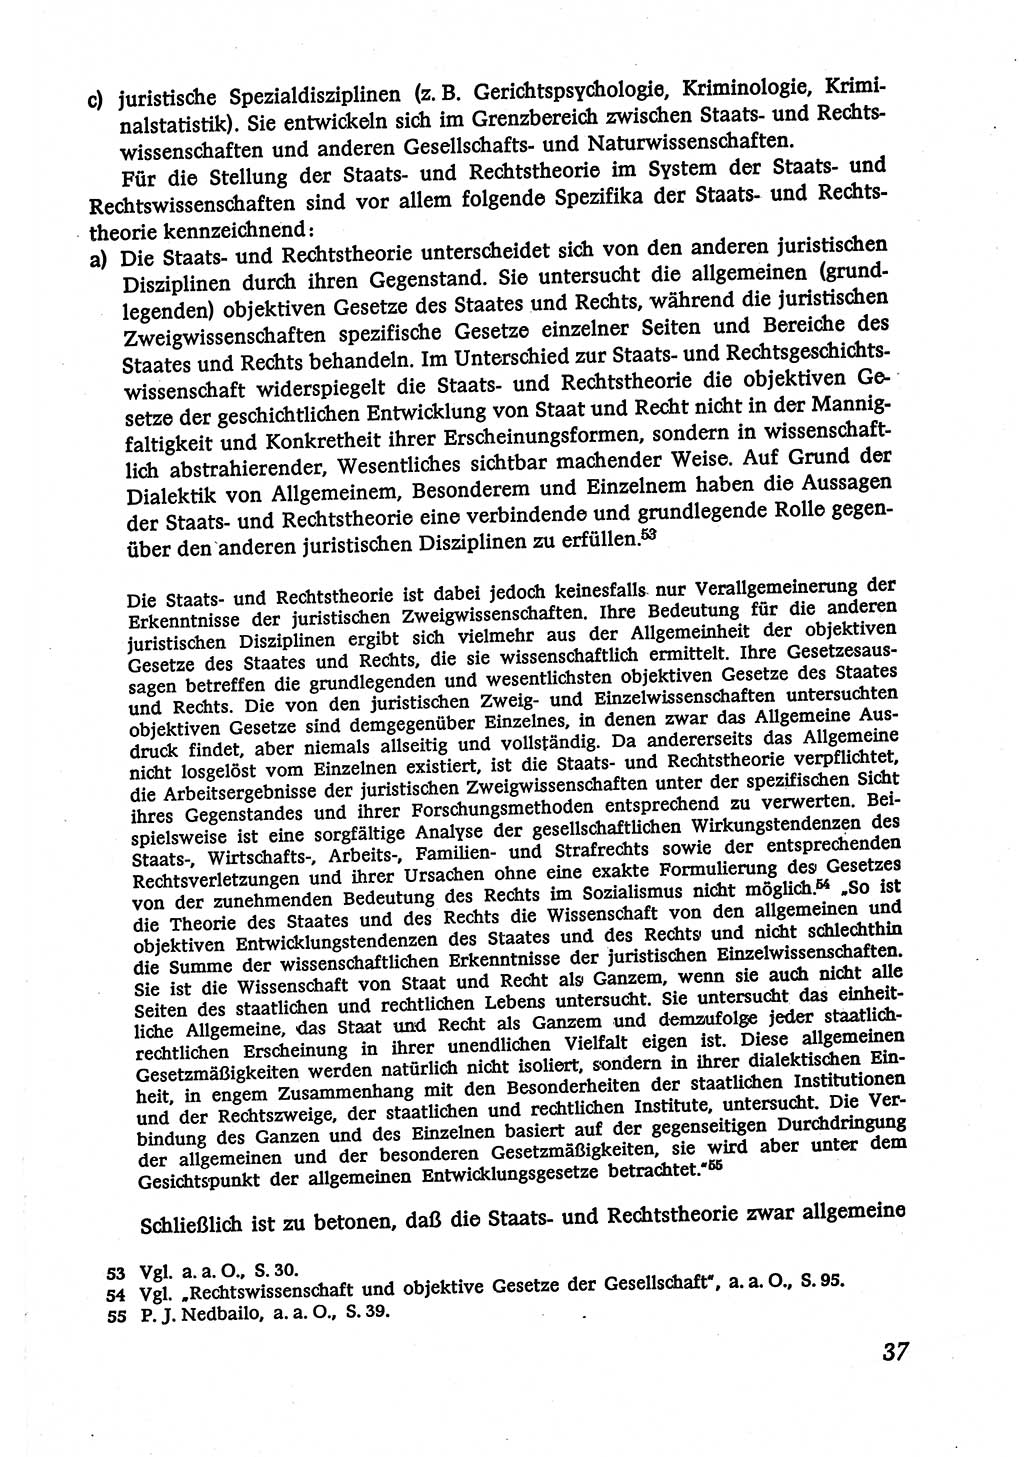 Marxistisch-leninistische (ML) Staats- und Rechtstheorie [Deutsche Demokratische Republik (DDR)], Lehrbuch 1980, Seite 37 (ML St.-R.-Th. DDR Lb. 1980, S. 37)